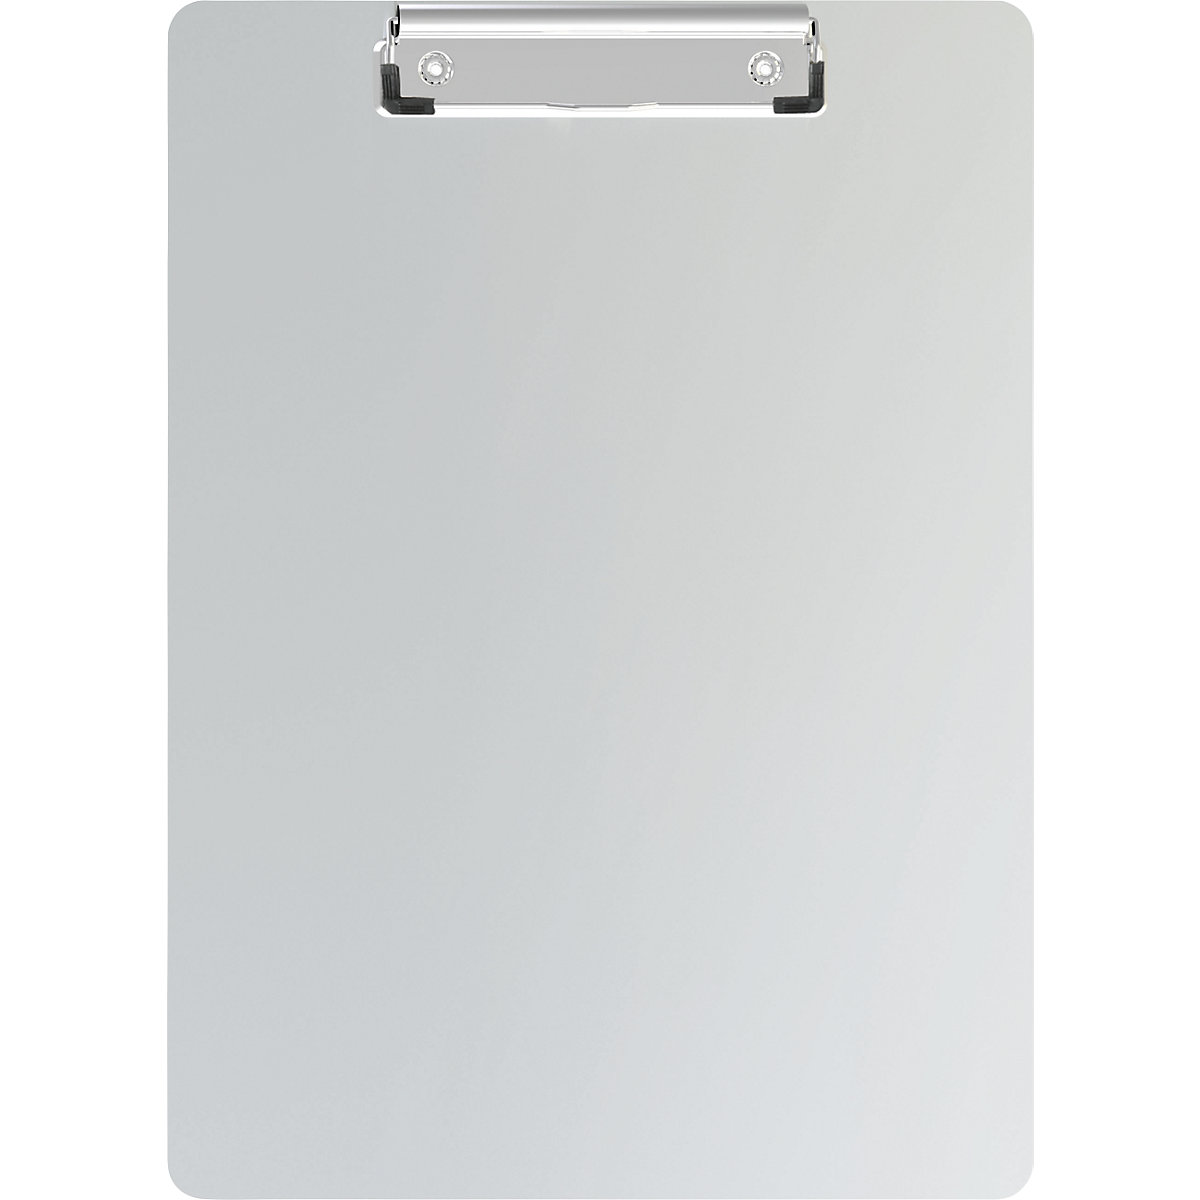 MAUL Schreibplatte, Aluminium, mit Bügelklemme und Magnetband, VE 2 Stk, LxBxT 319 x 230 x 14 mm